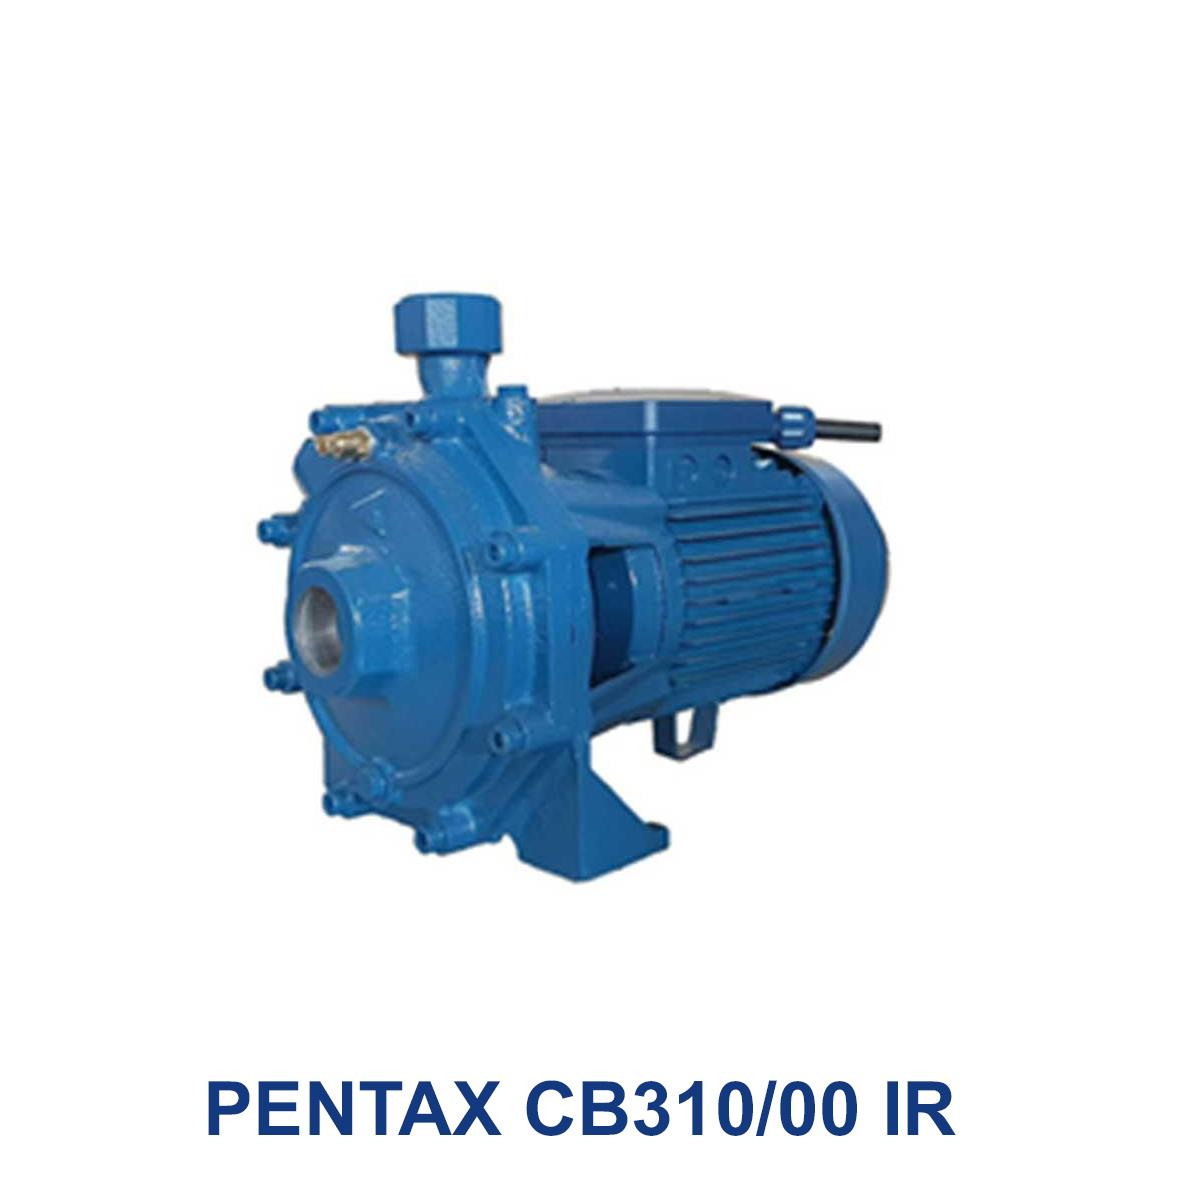 PENTAX-CB310-00-IR